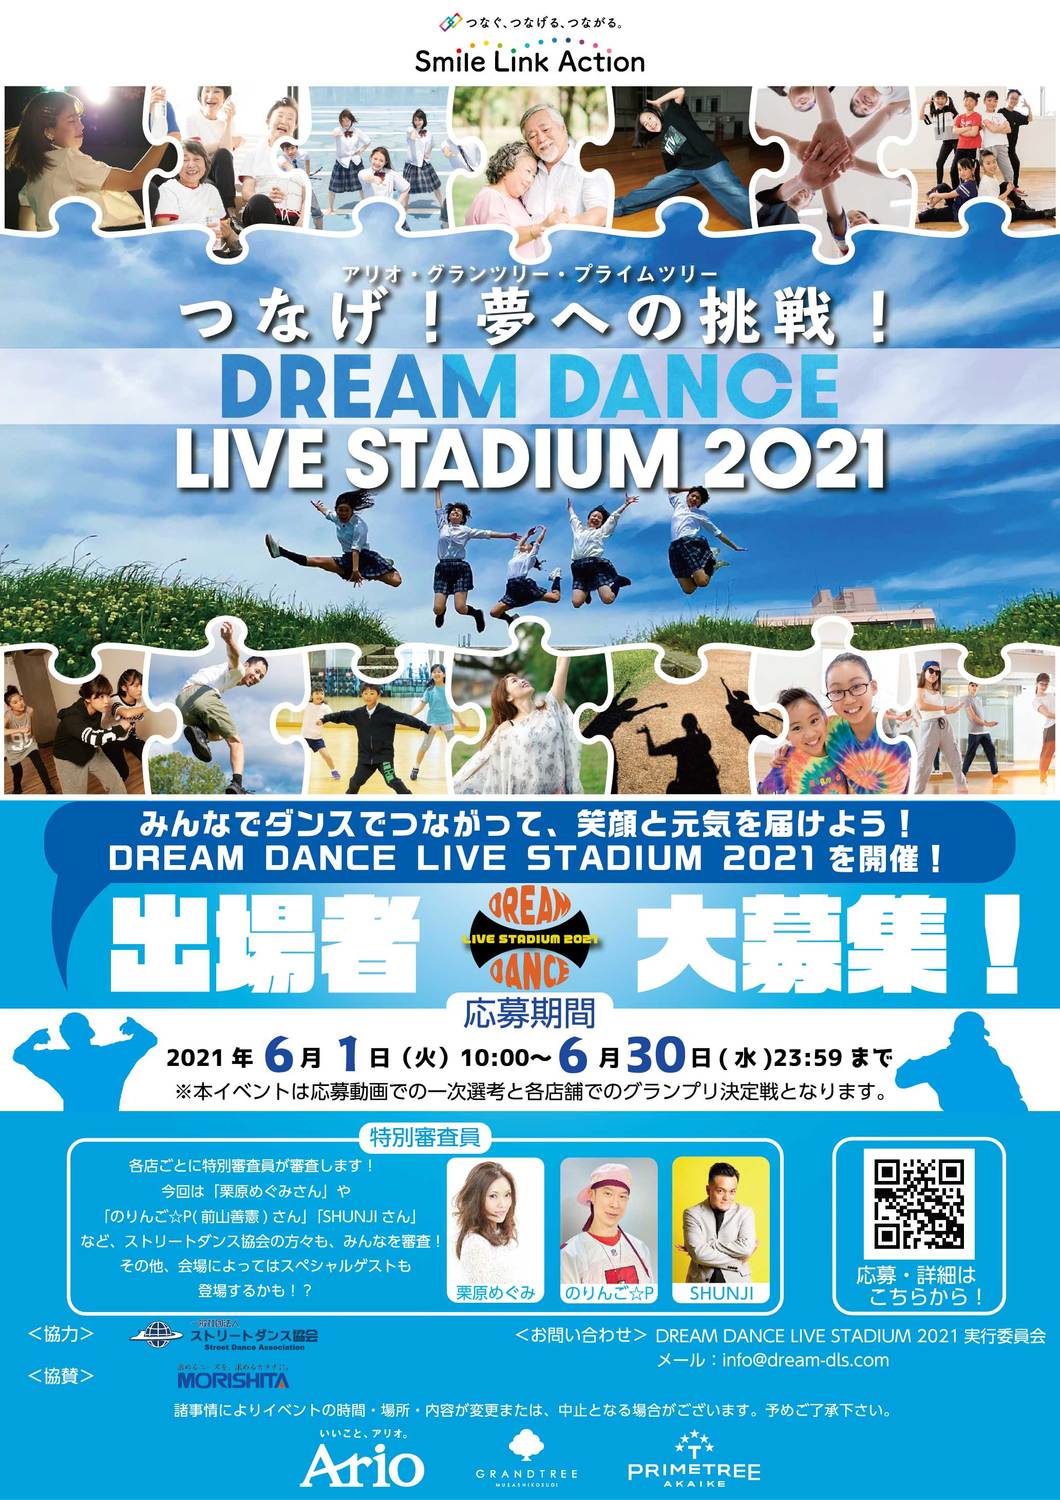 参加者募集中 つなげ 夢への挑戦 Dream Dance Live Stadium21 イベント情報 アリオ北砂